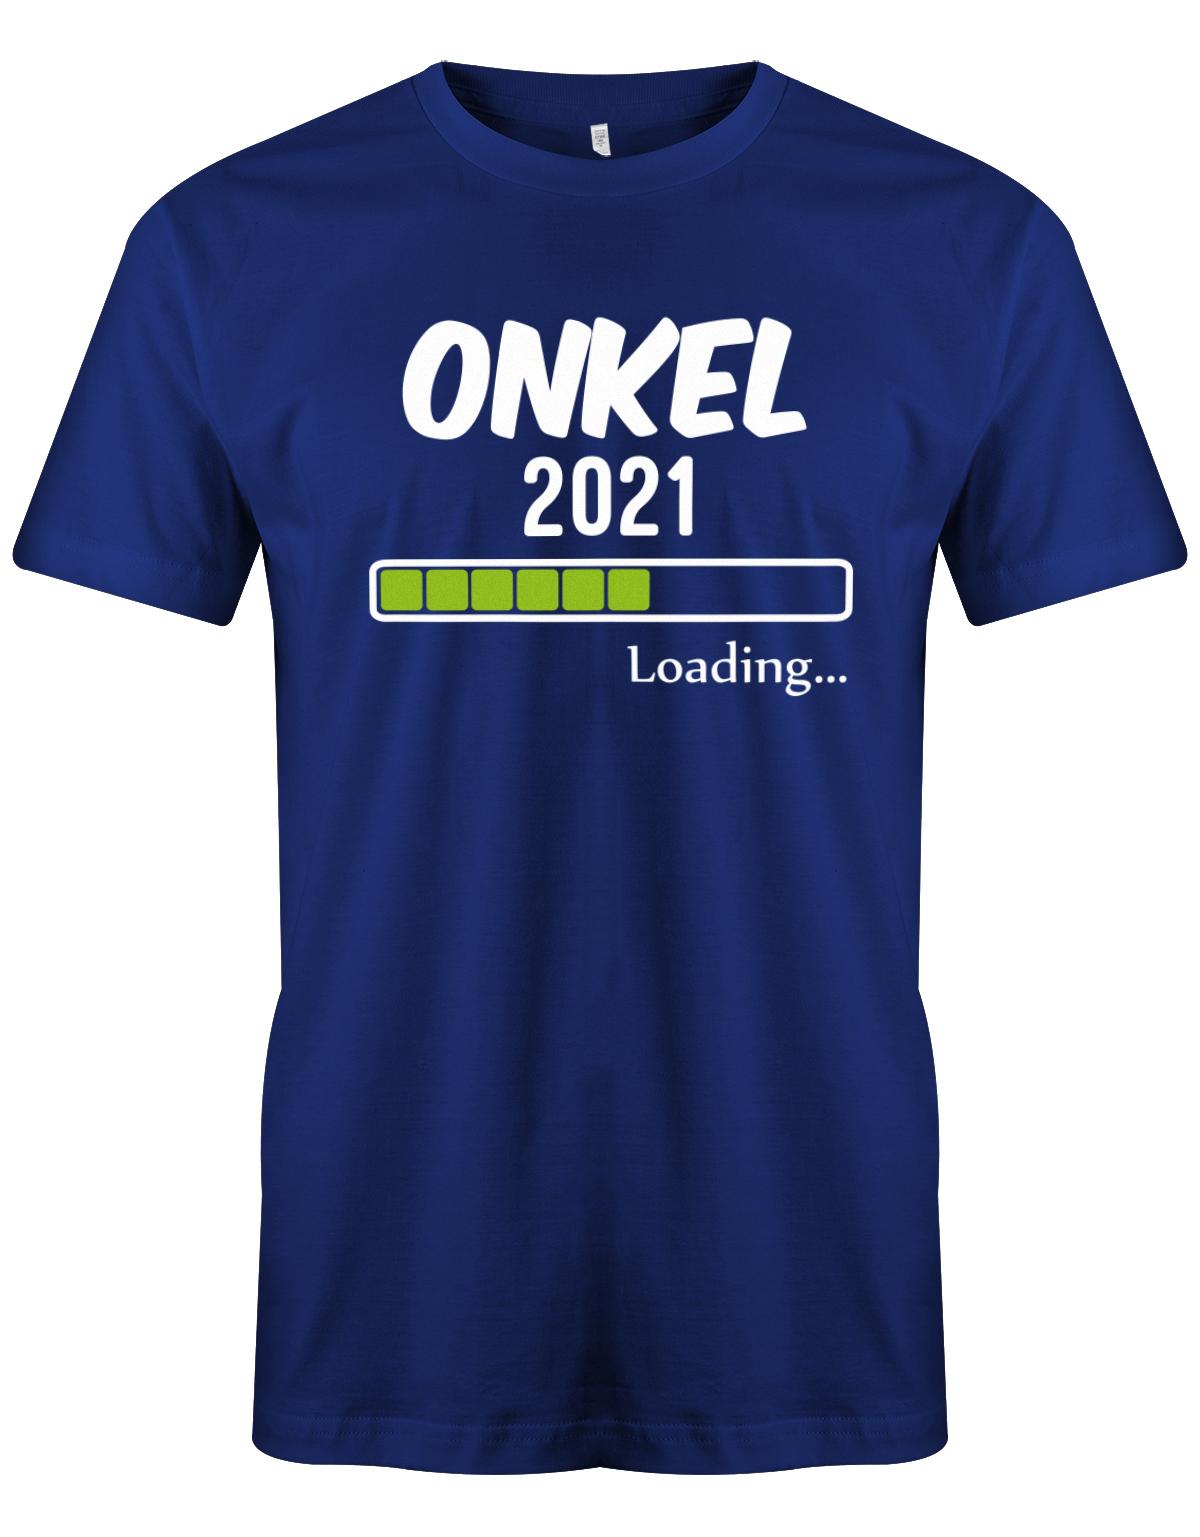 Onkel-loading-2021-Herren-Shirt-Royalblau